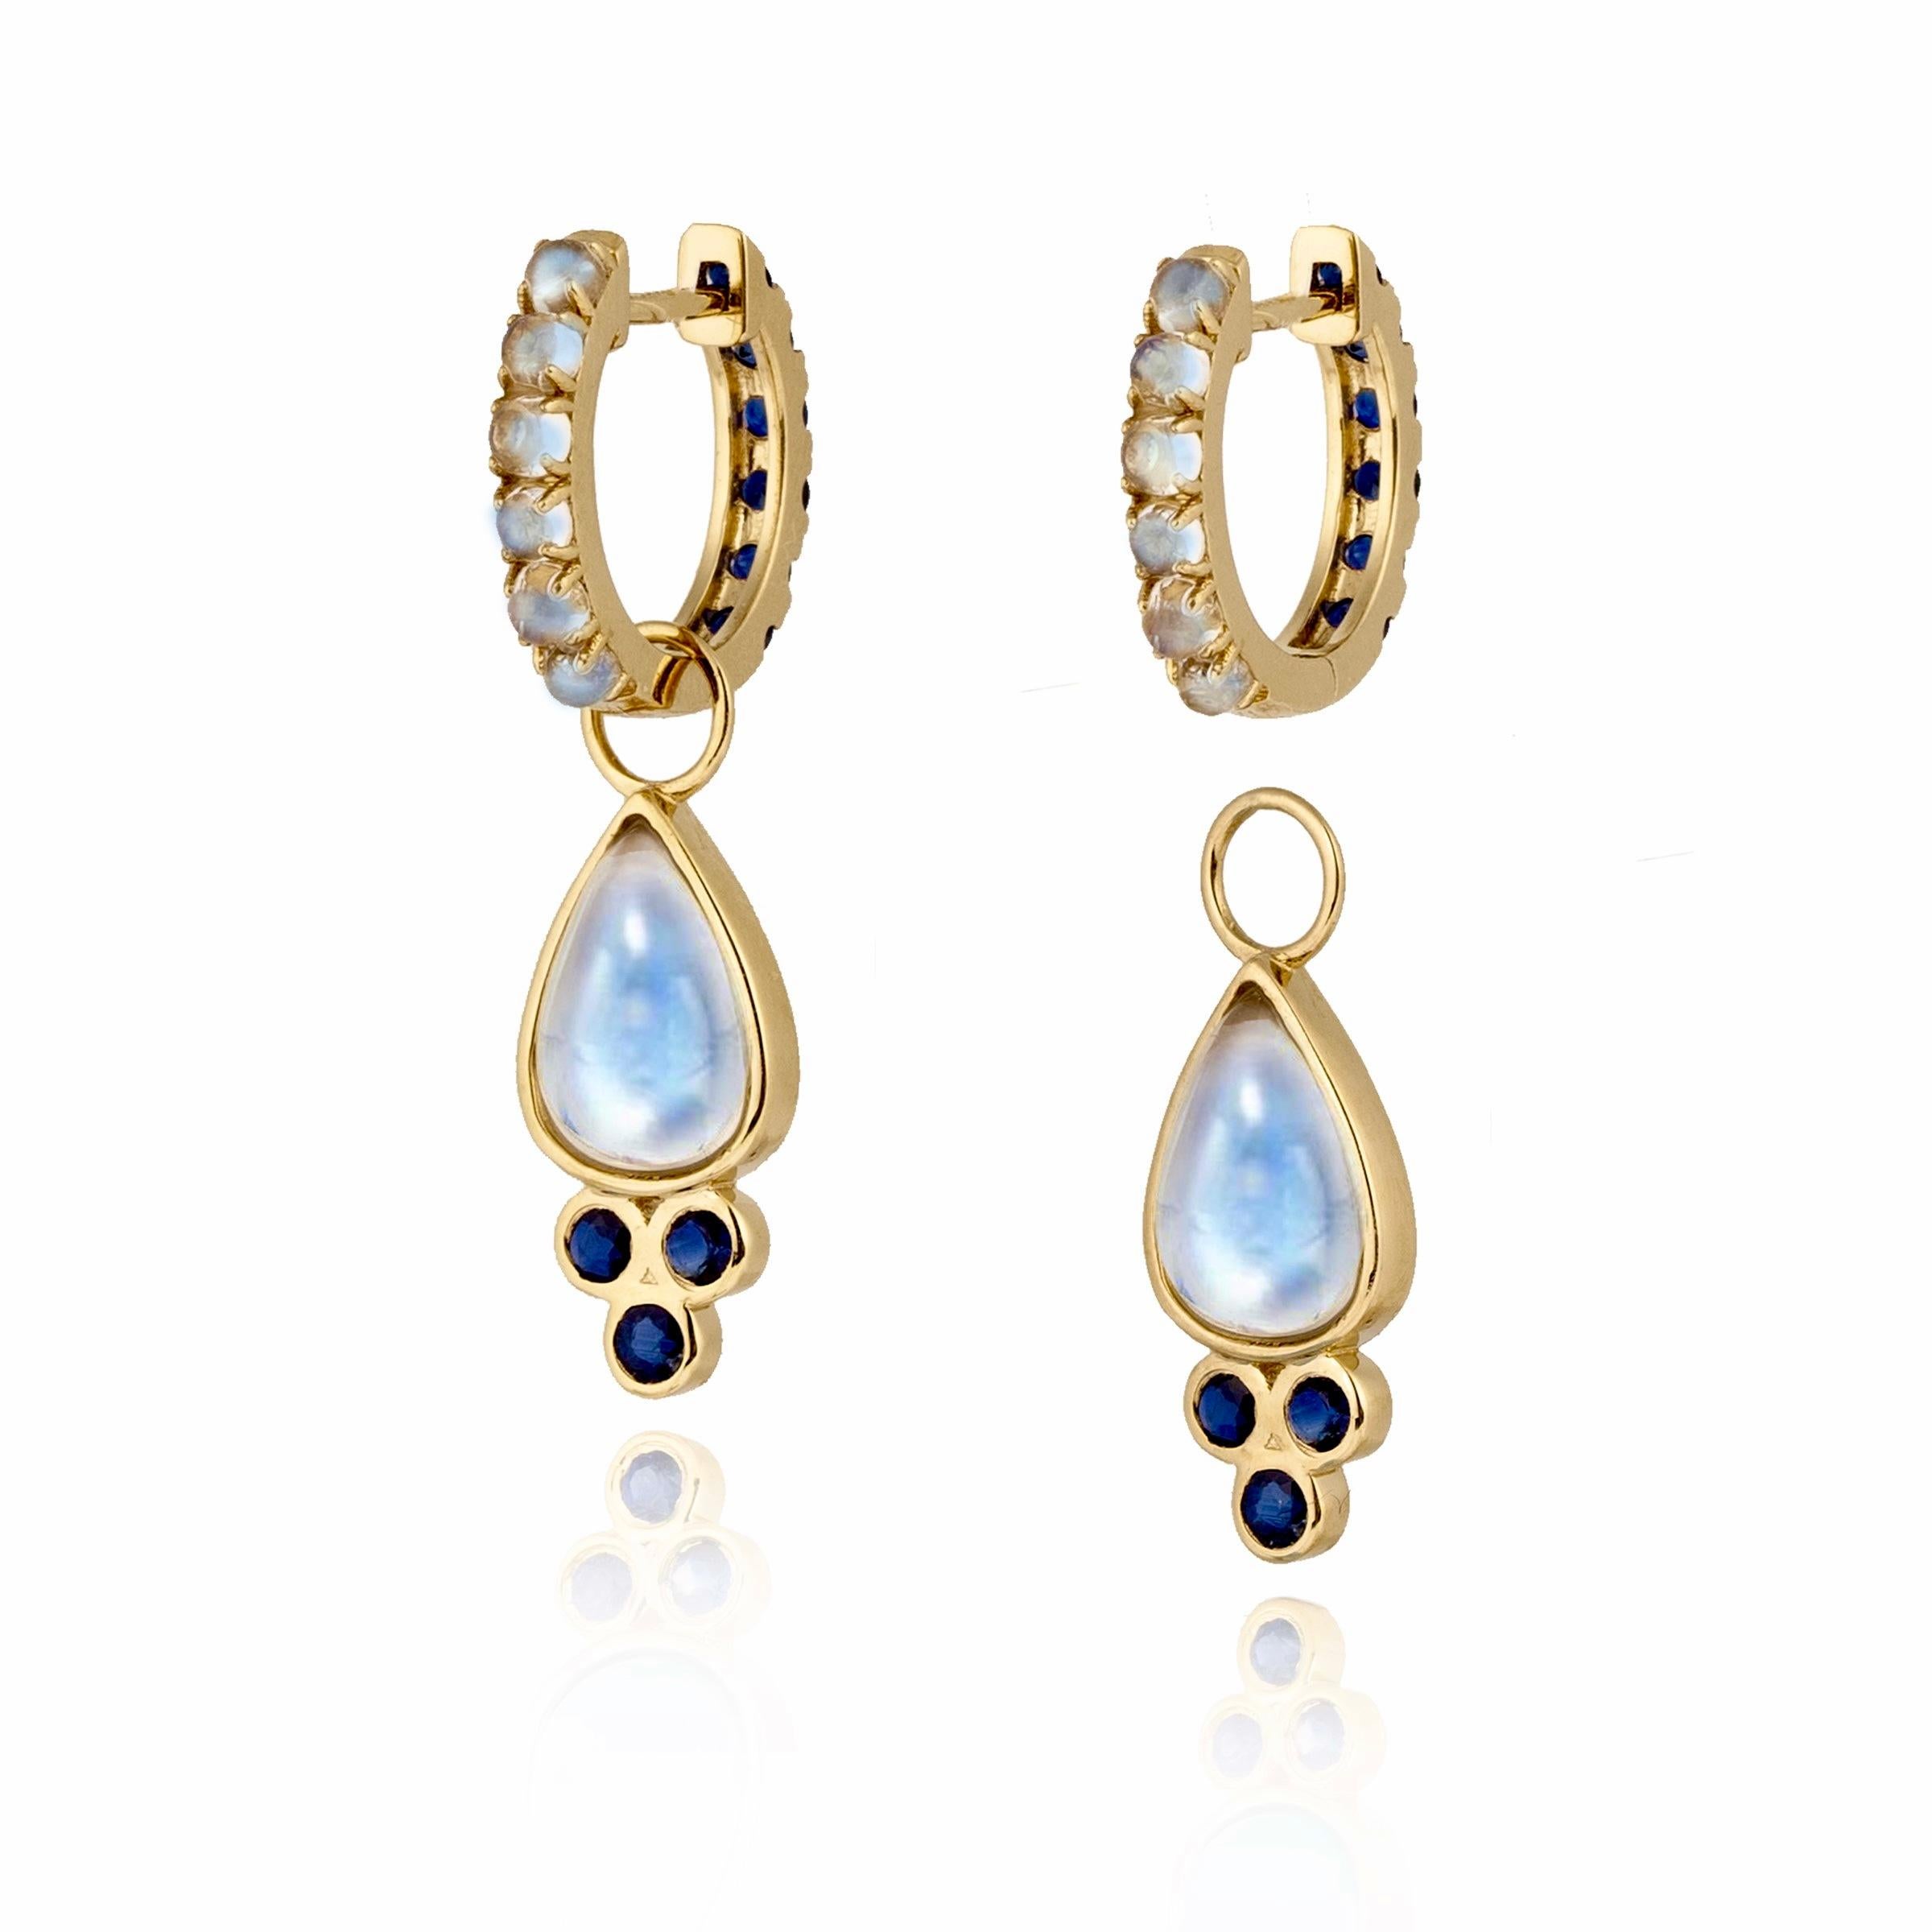 Entdecken Sie die Nina Zhou Saphir- und Mondstein-Ohrringe mit doppelseitigem Reif und Tropfenverzierung. Diese exquisiten Ohrringe definieren Eleganz neu. Die atemberaubende Kombination aus Saphiren und Mondstein auf beiden Seiten sorgt für einen